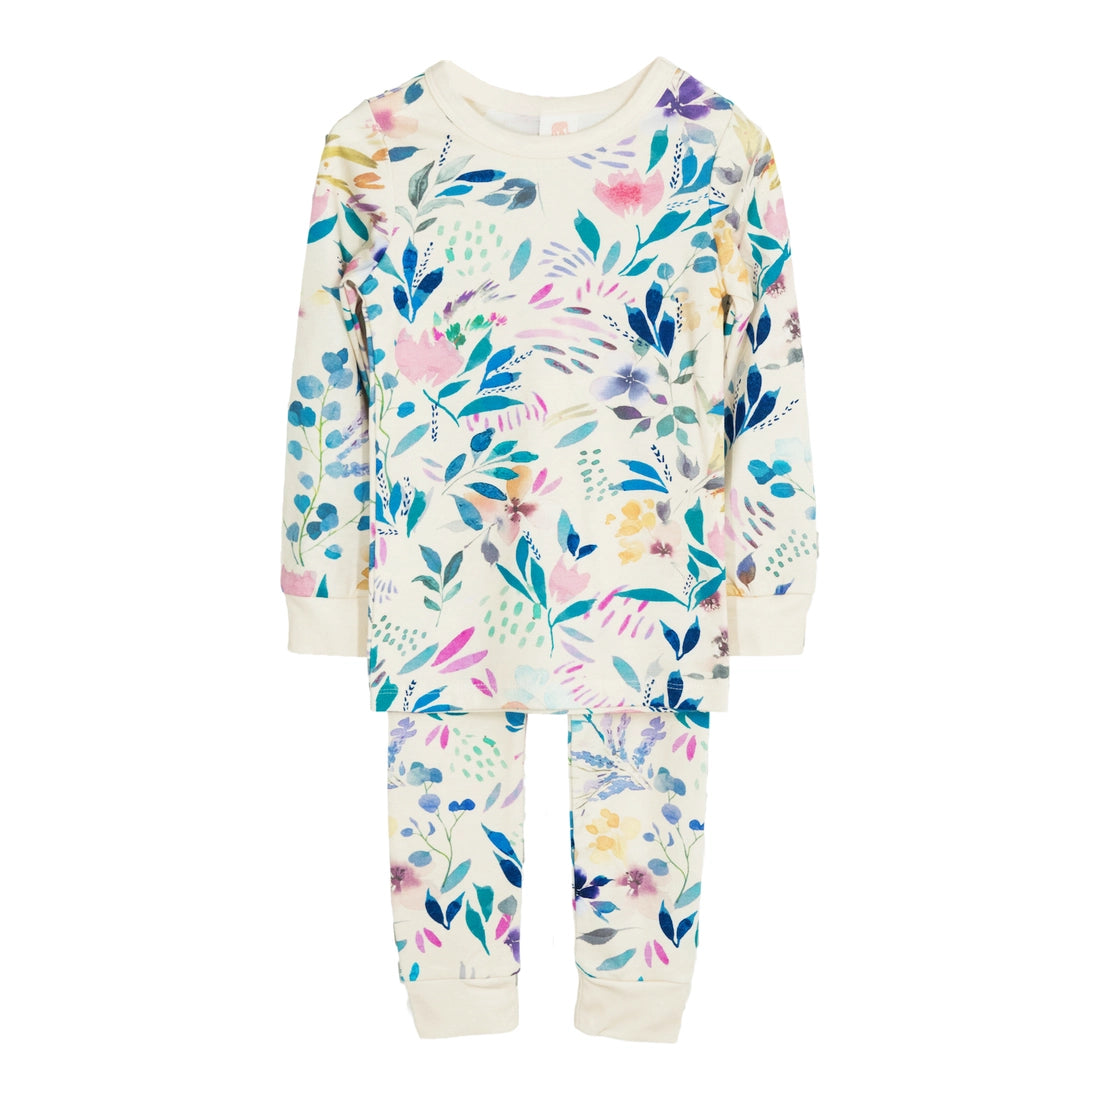 Kids Long John Pajama Set - Wistful Floral